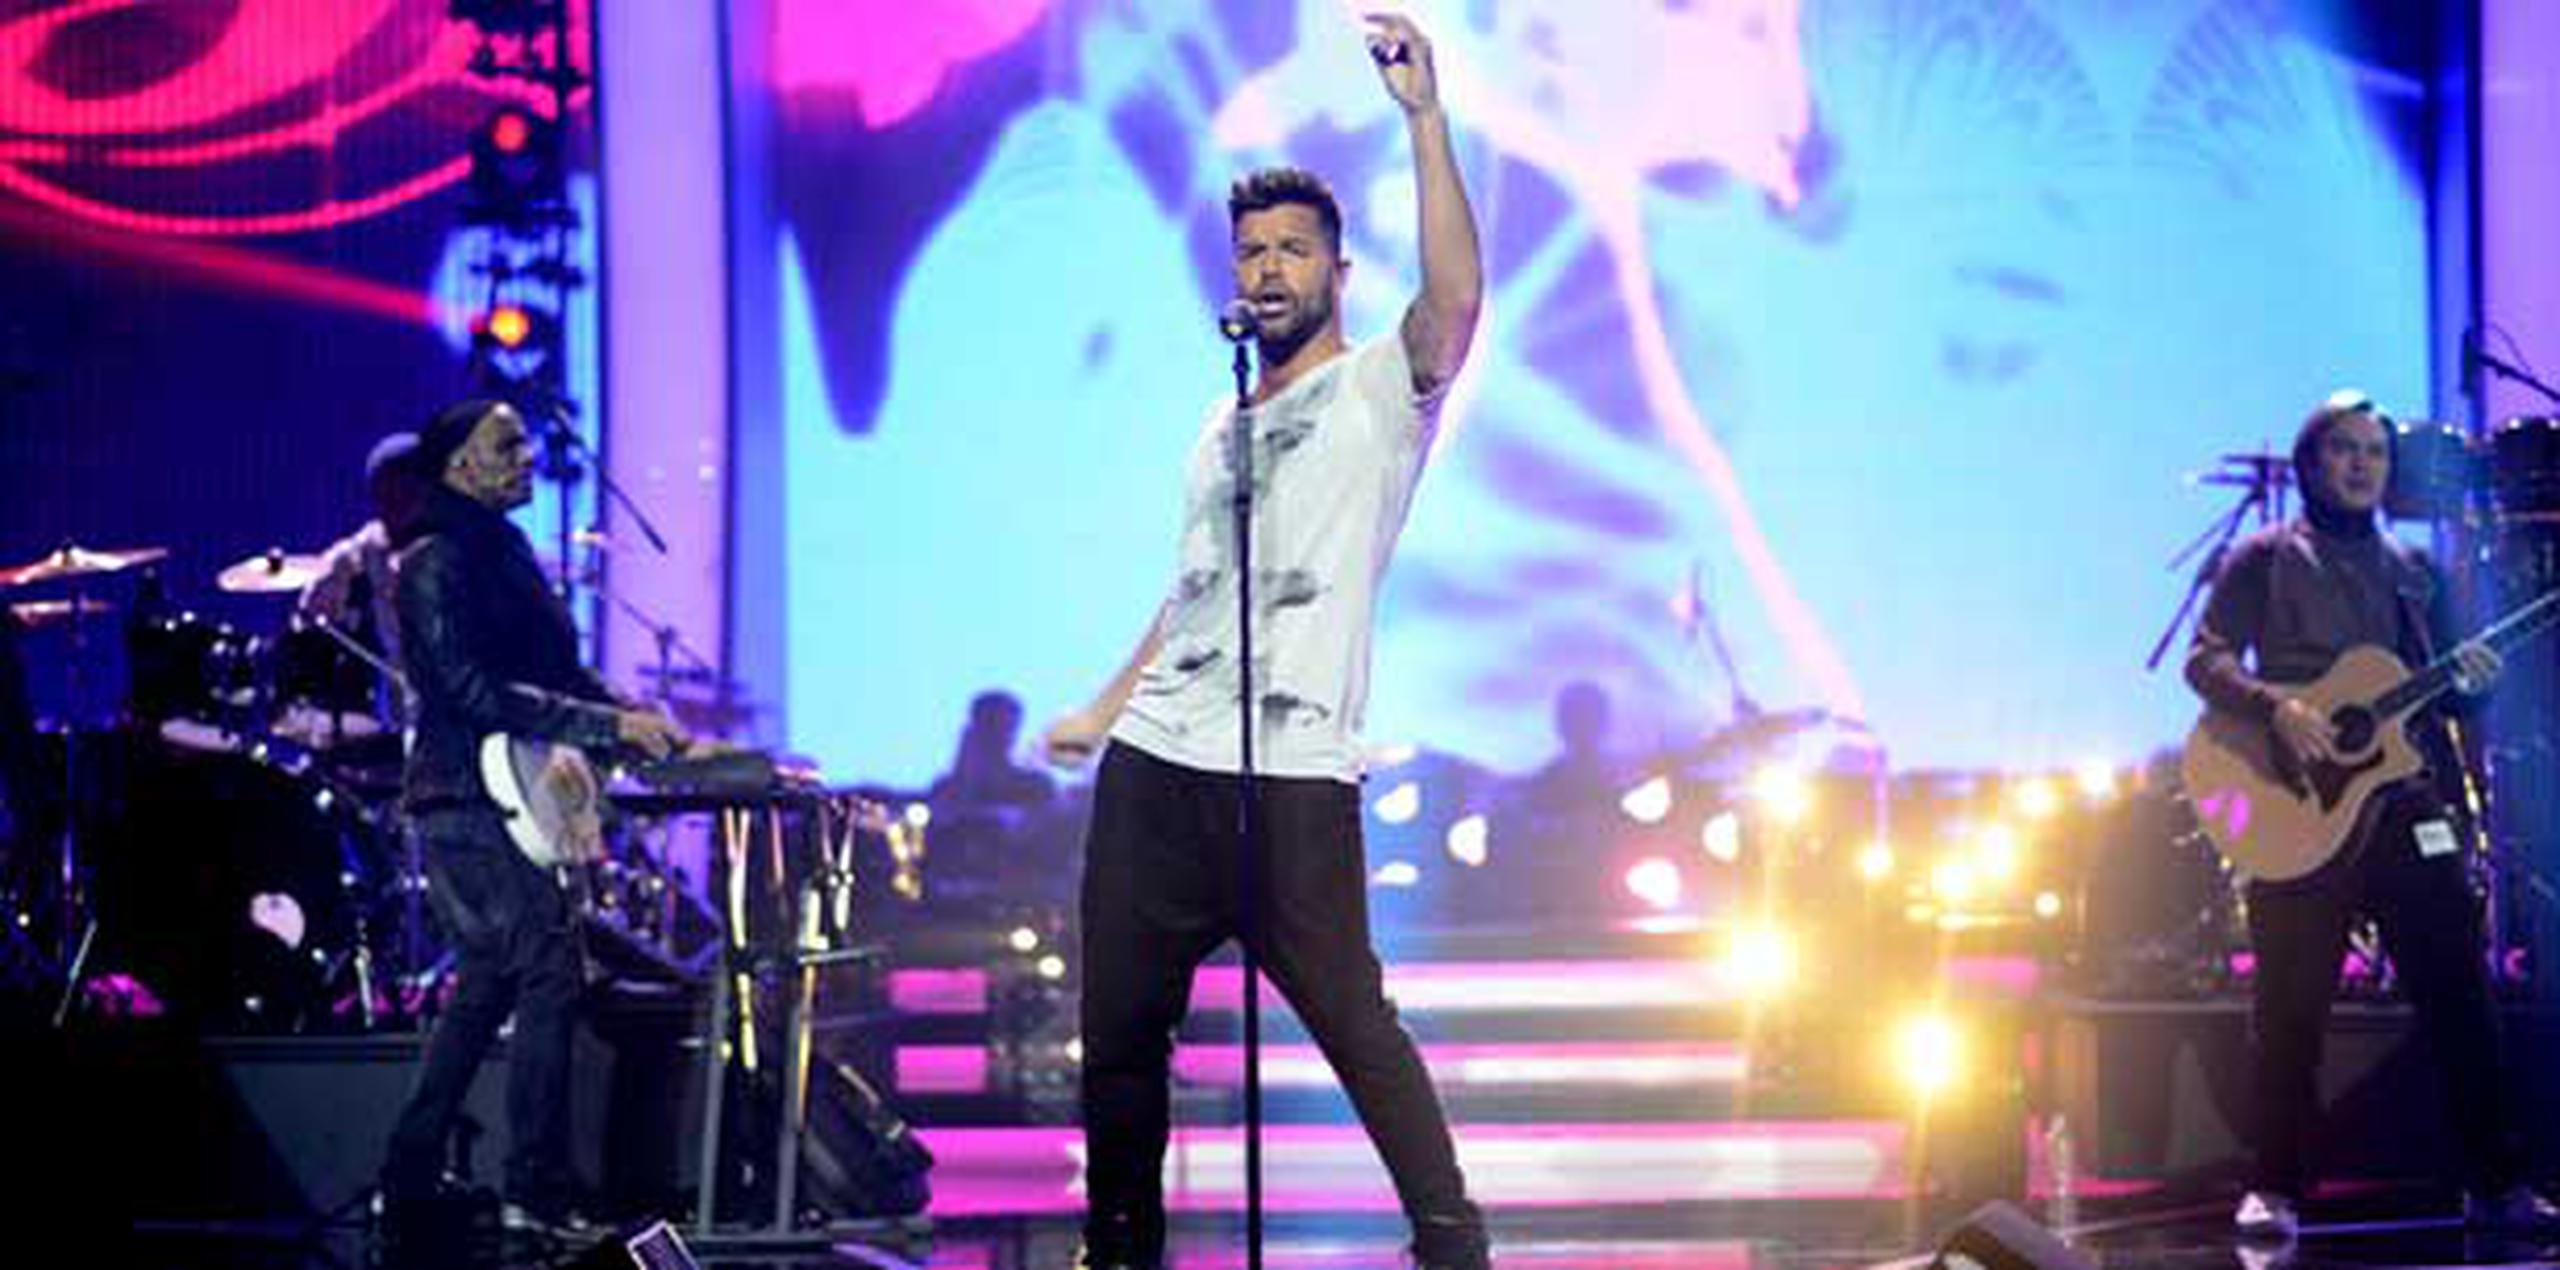 Ricky Martin estrenará su más reciente sencillo en promoción, titulado Adiós. (Suministrada)